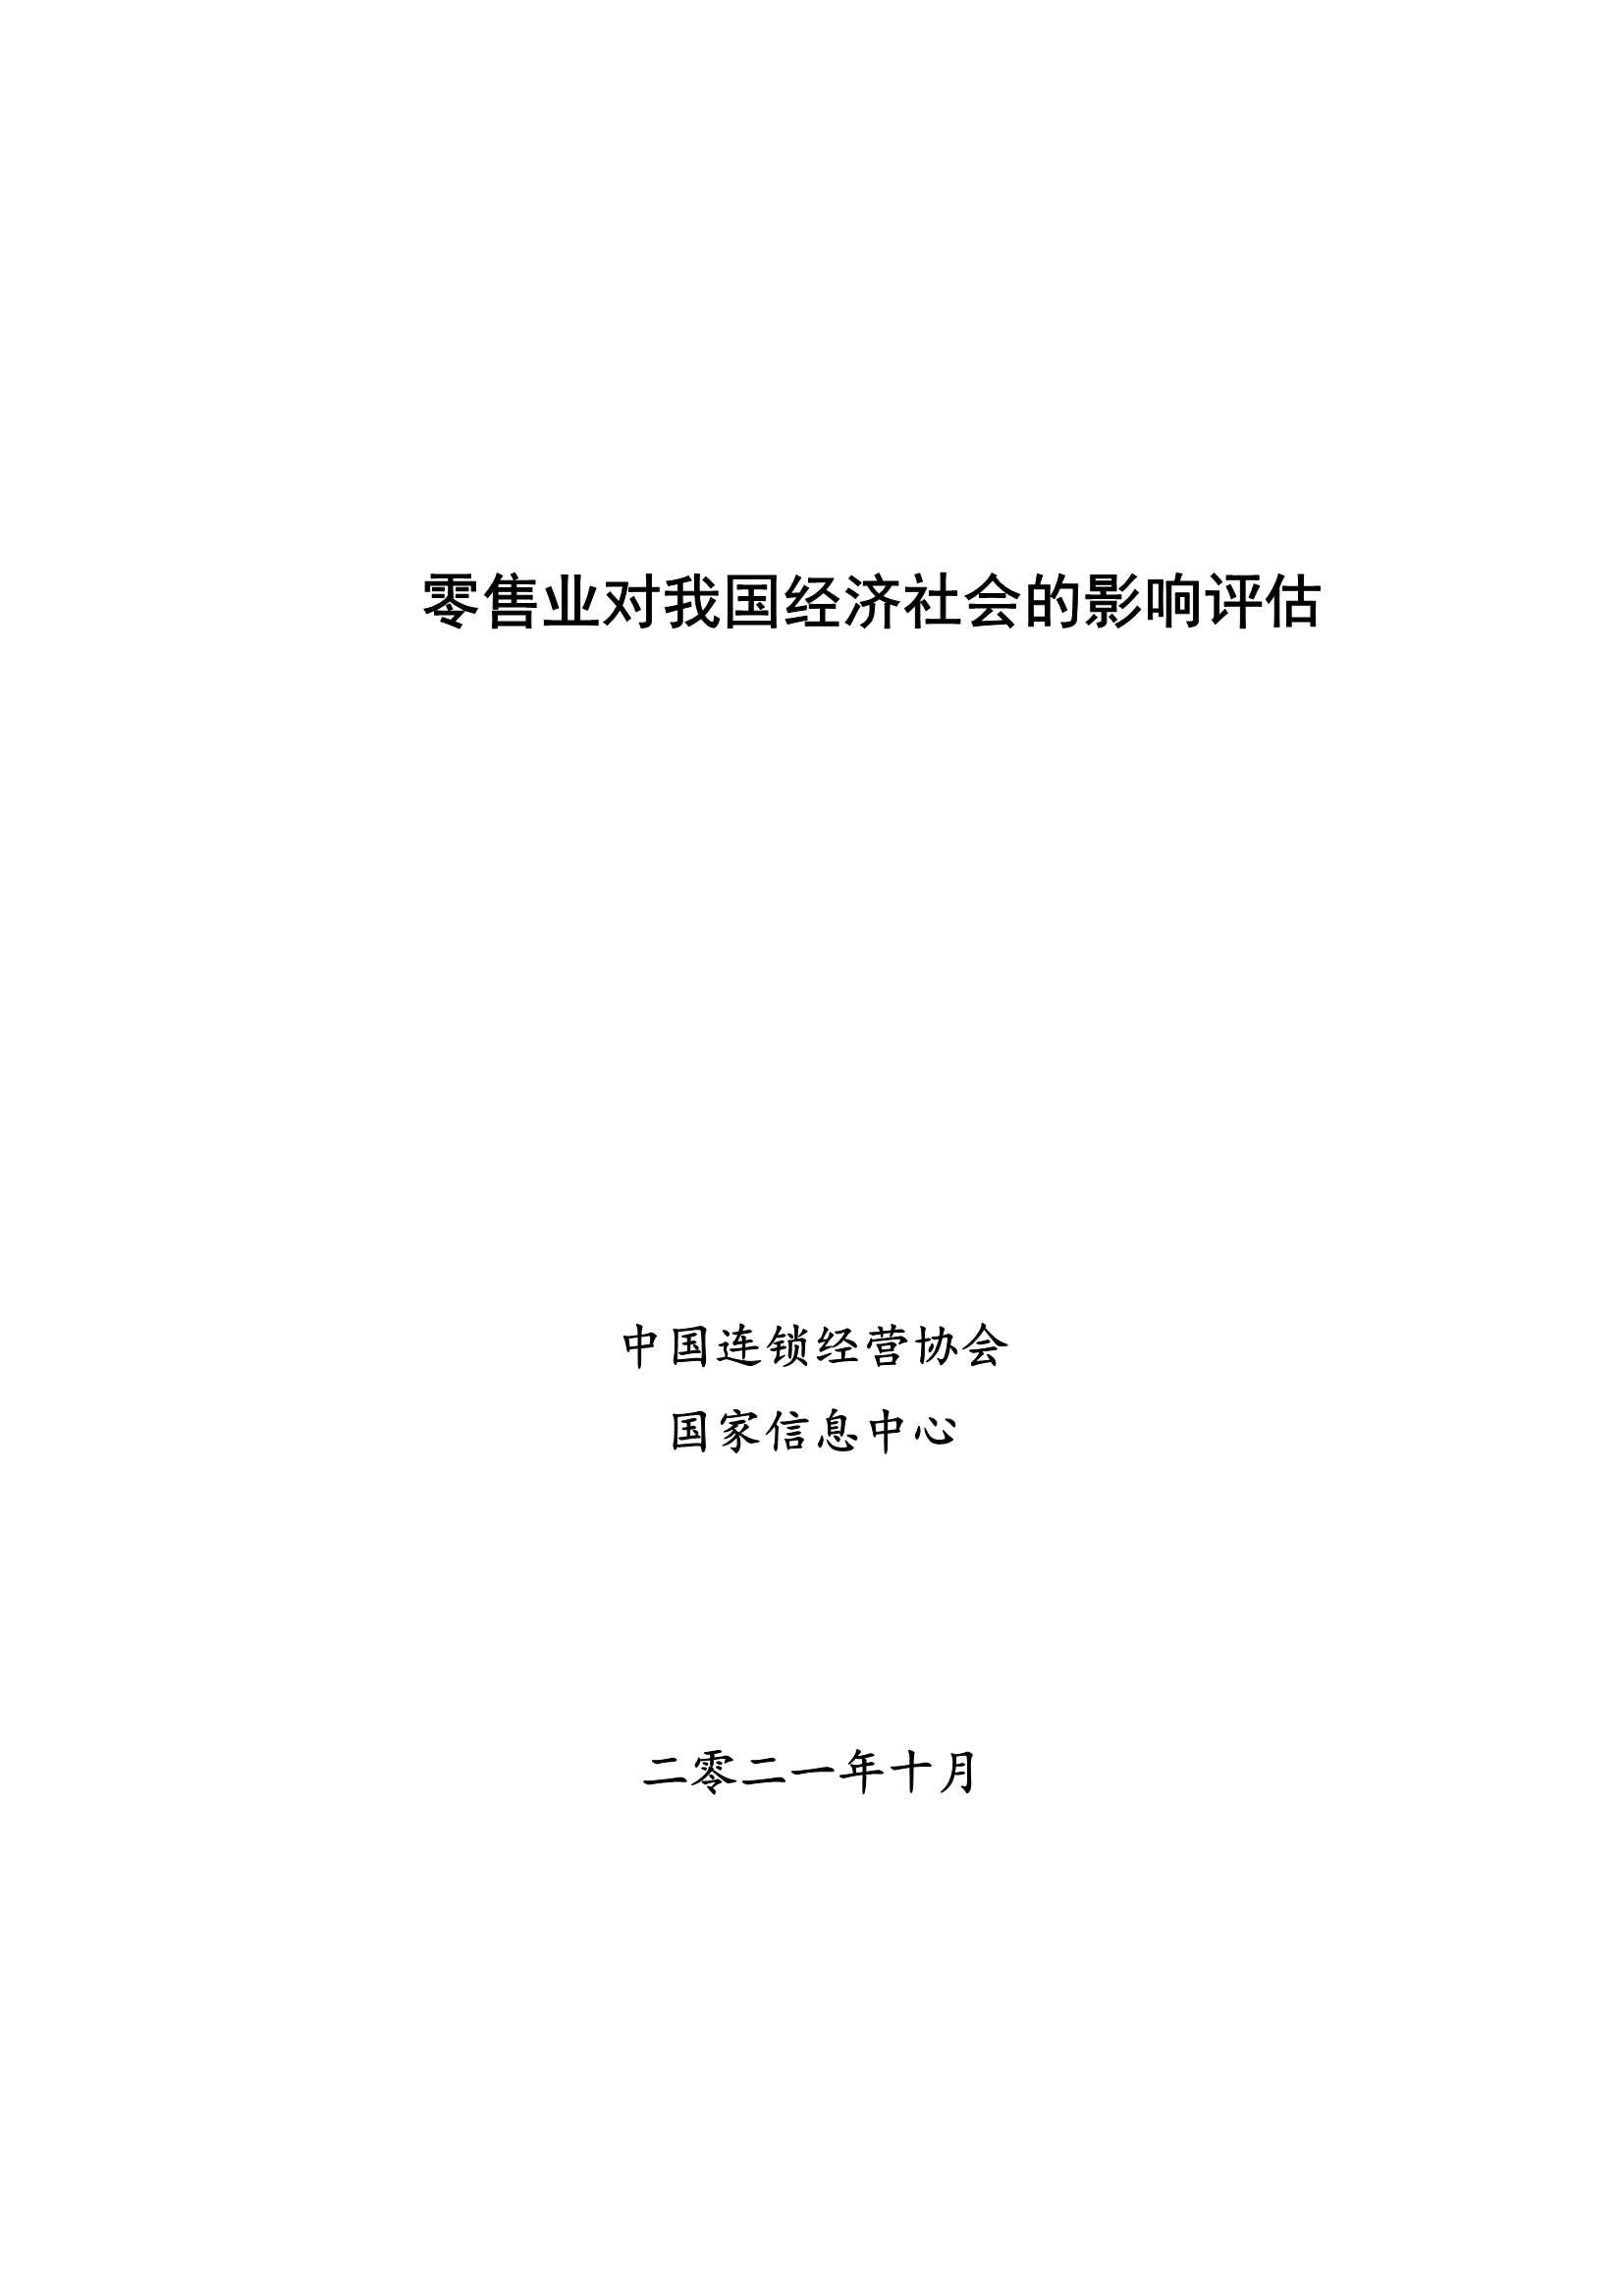 中国连锁经营协会-零售业对经济社会的影响评估-2021.11-38页